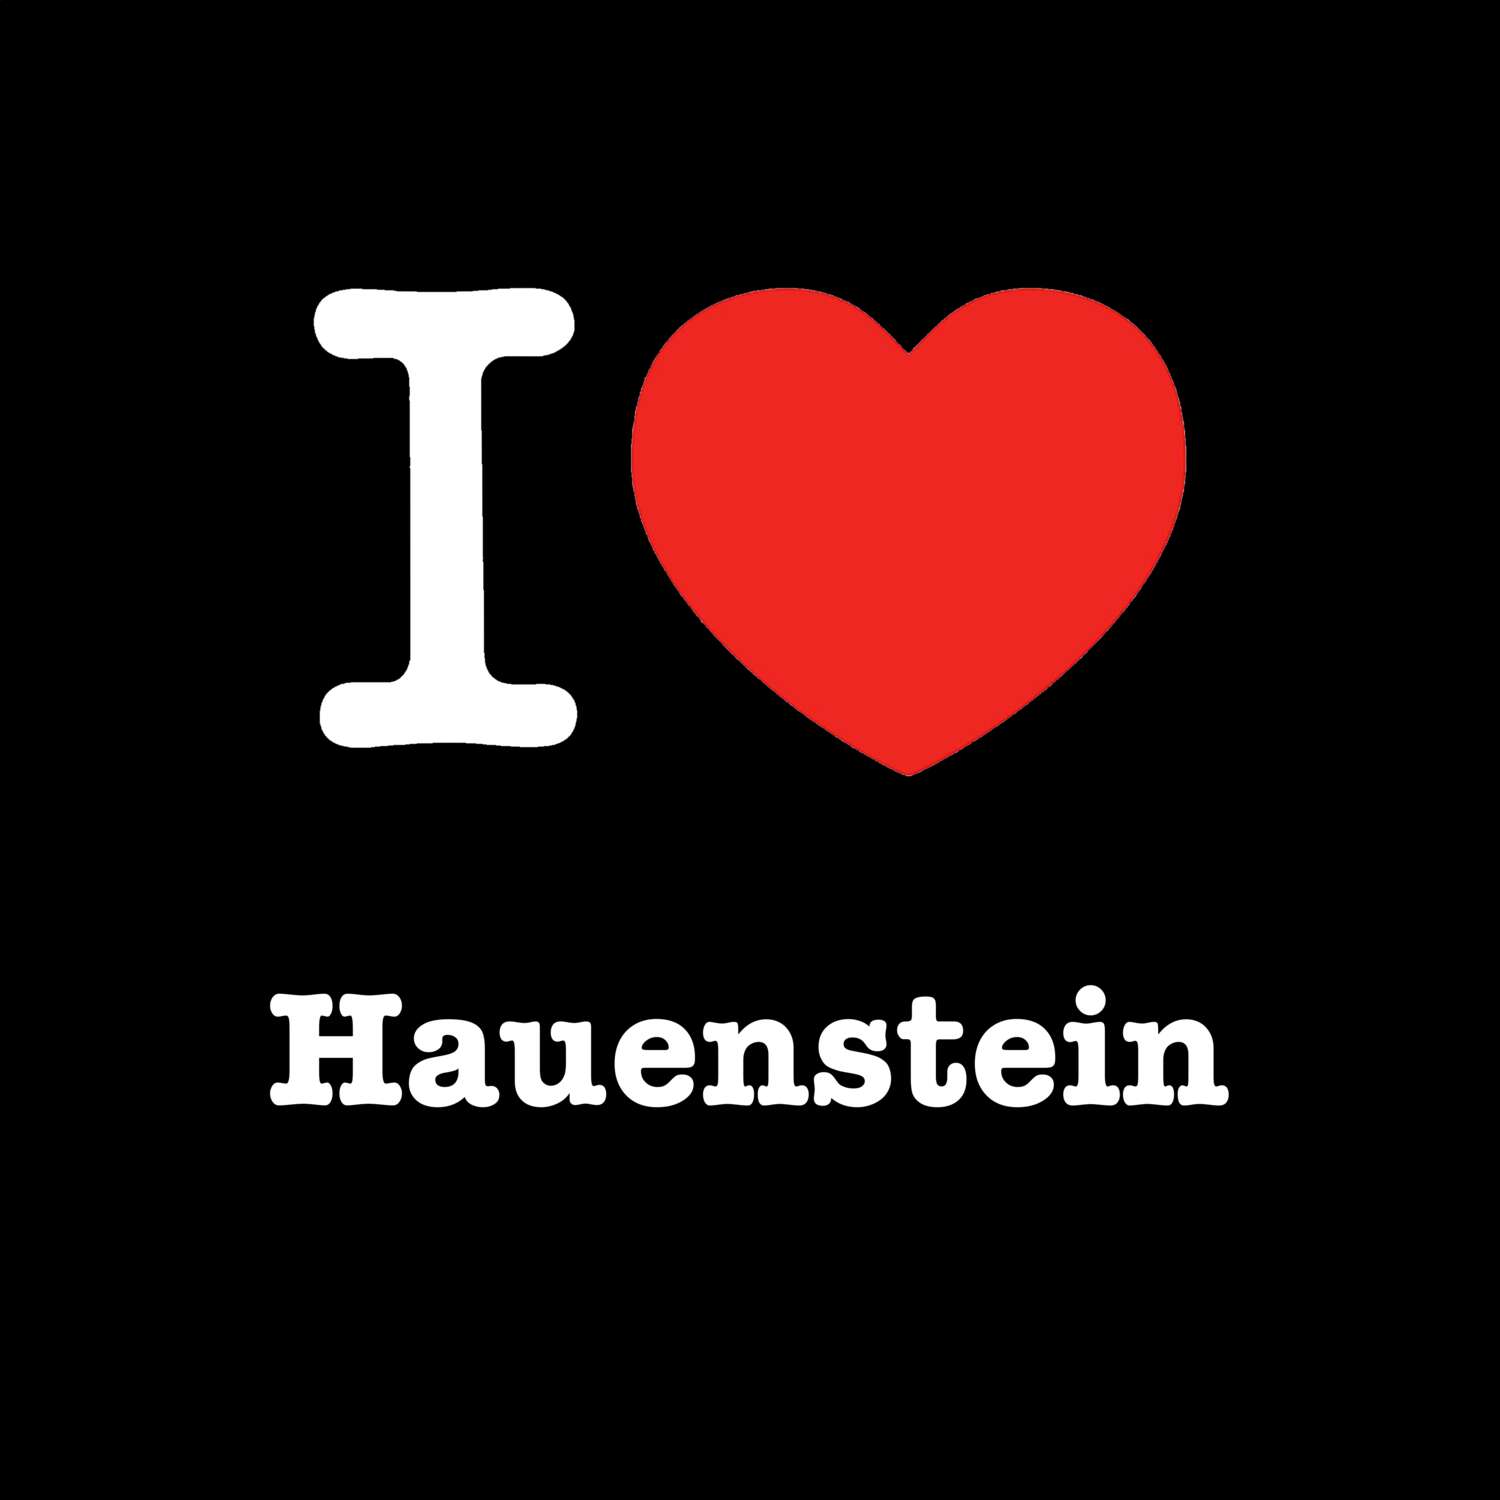 Hauenstein T-Shirt »I love«